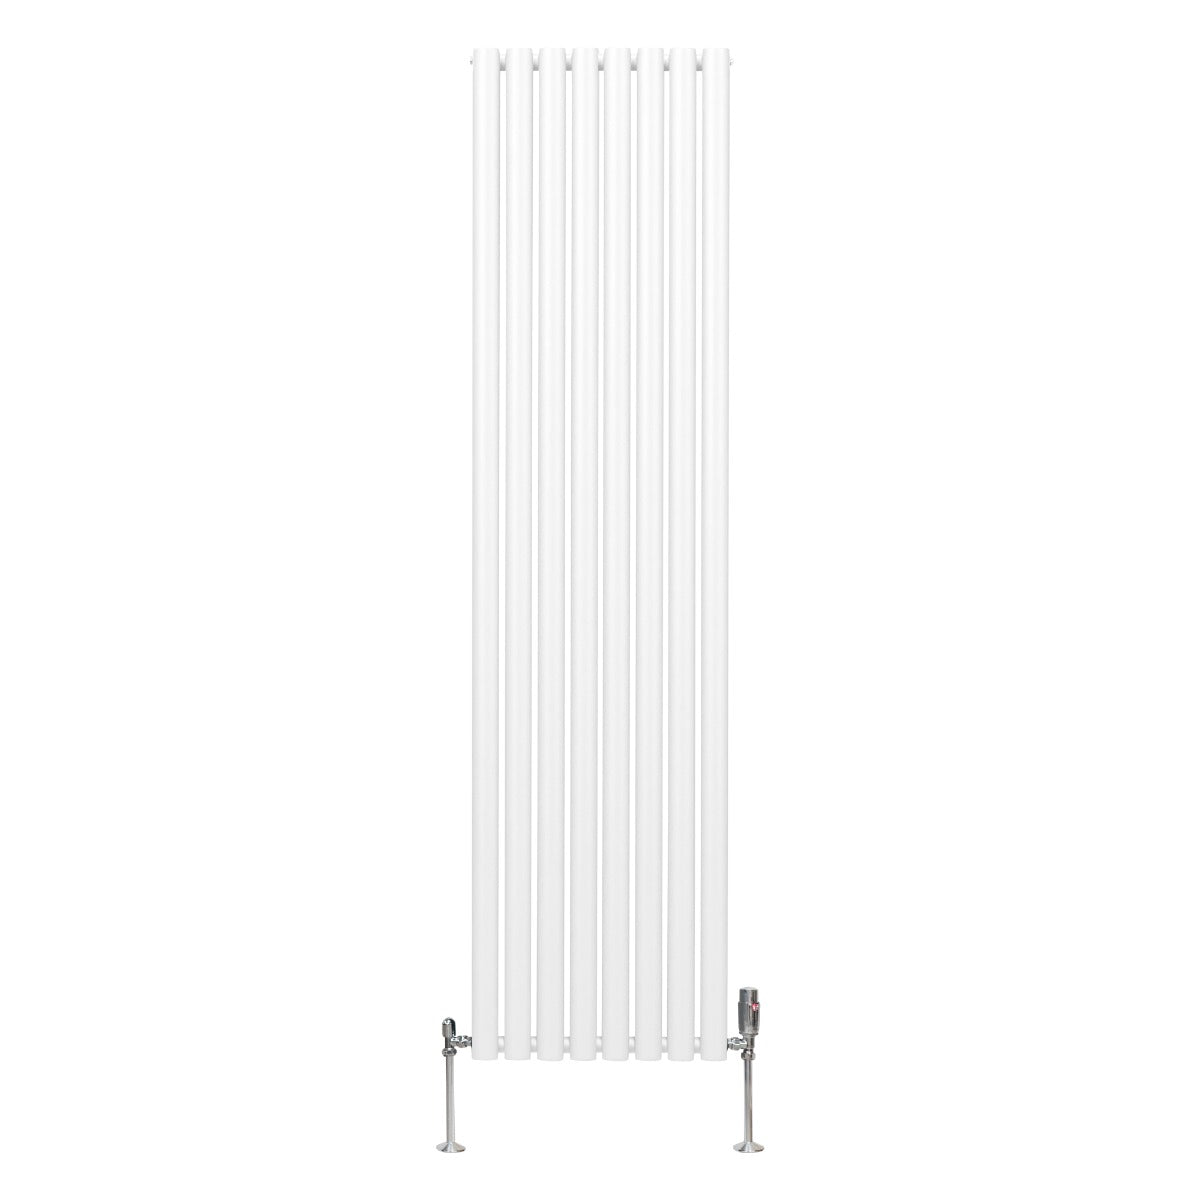 Oval Column Radiator & Valves - 1800mm x 480mm – White